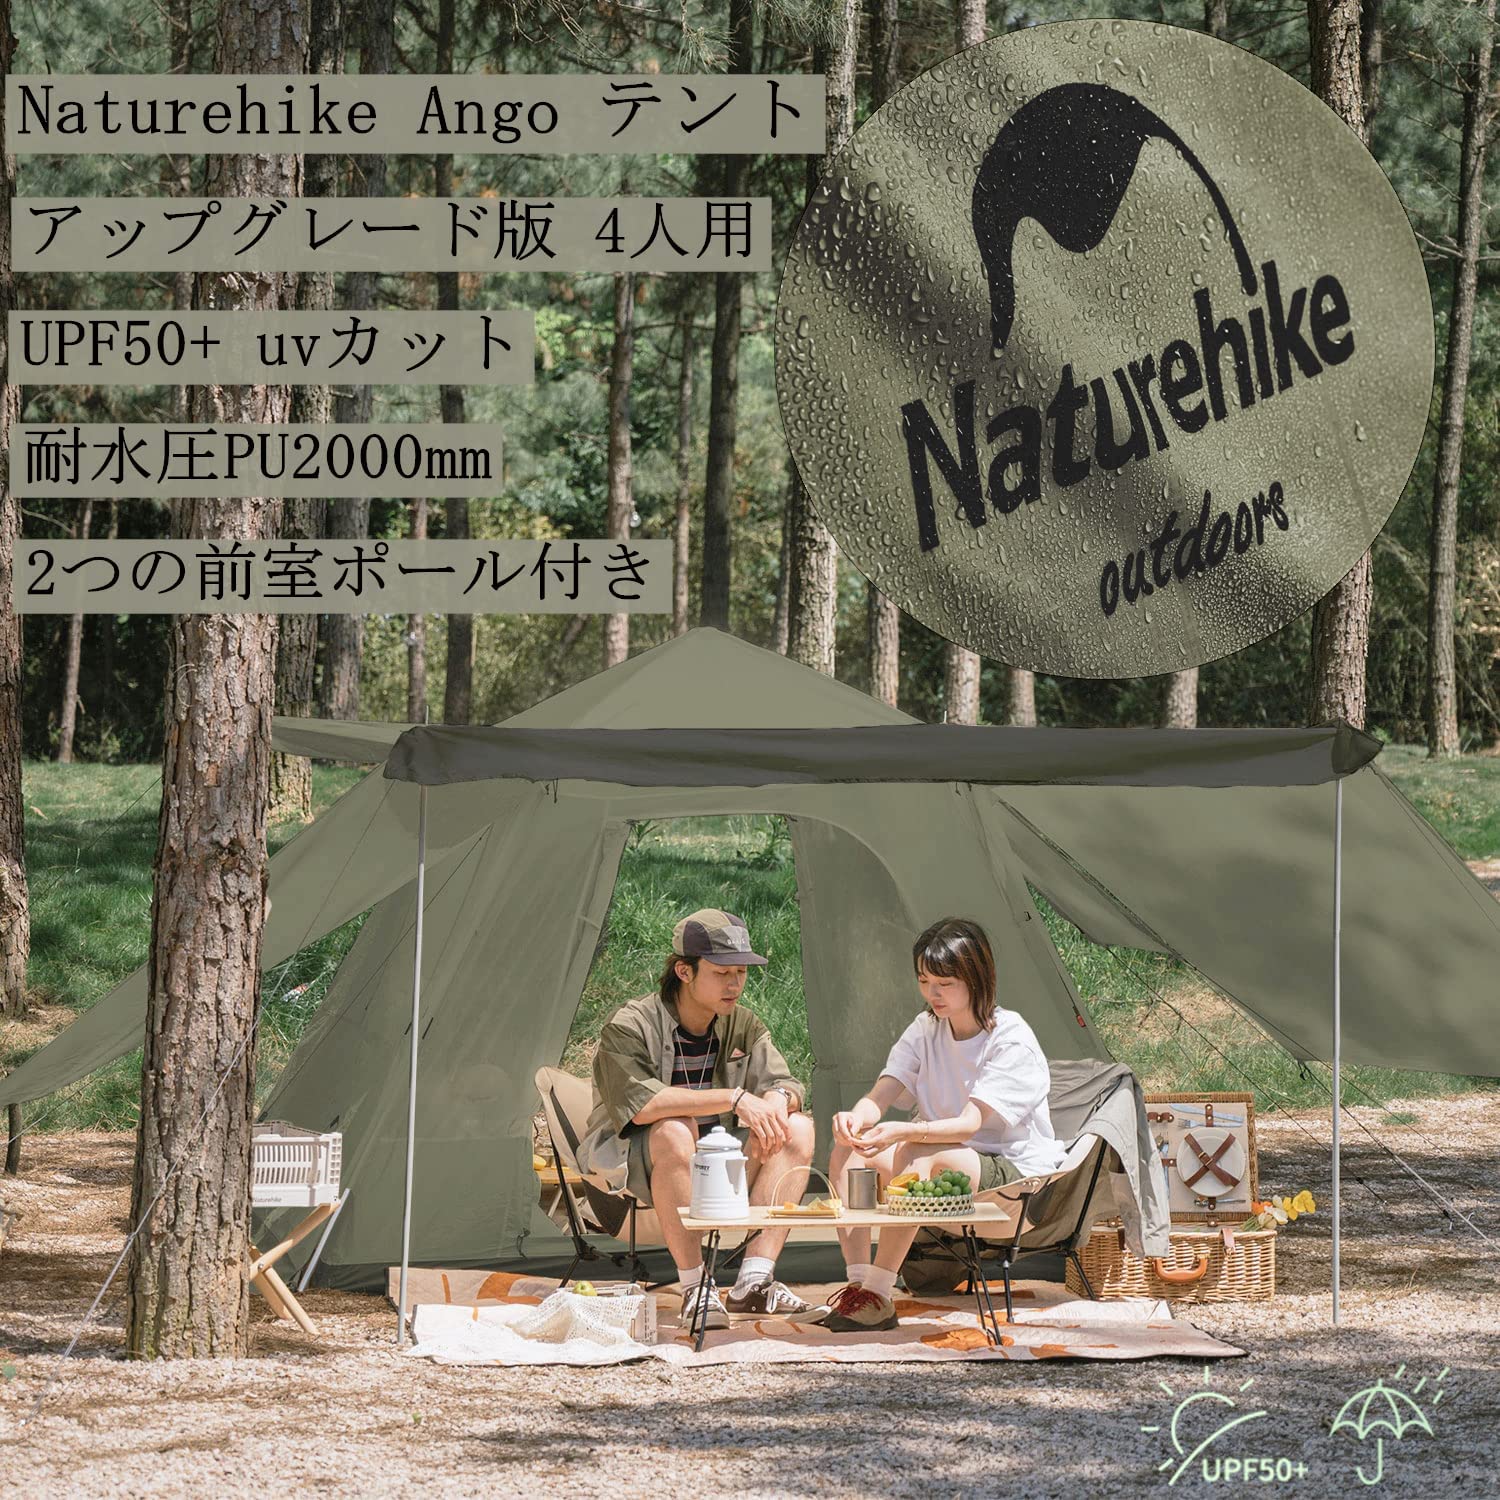 Naturehike ワンタッチテント UPF50+【2-4人用】Ango4 2つの前室ルーム 